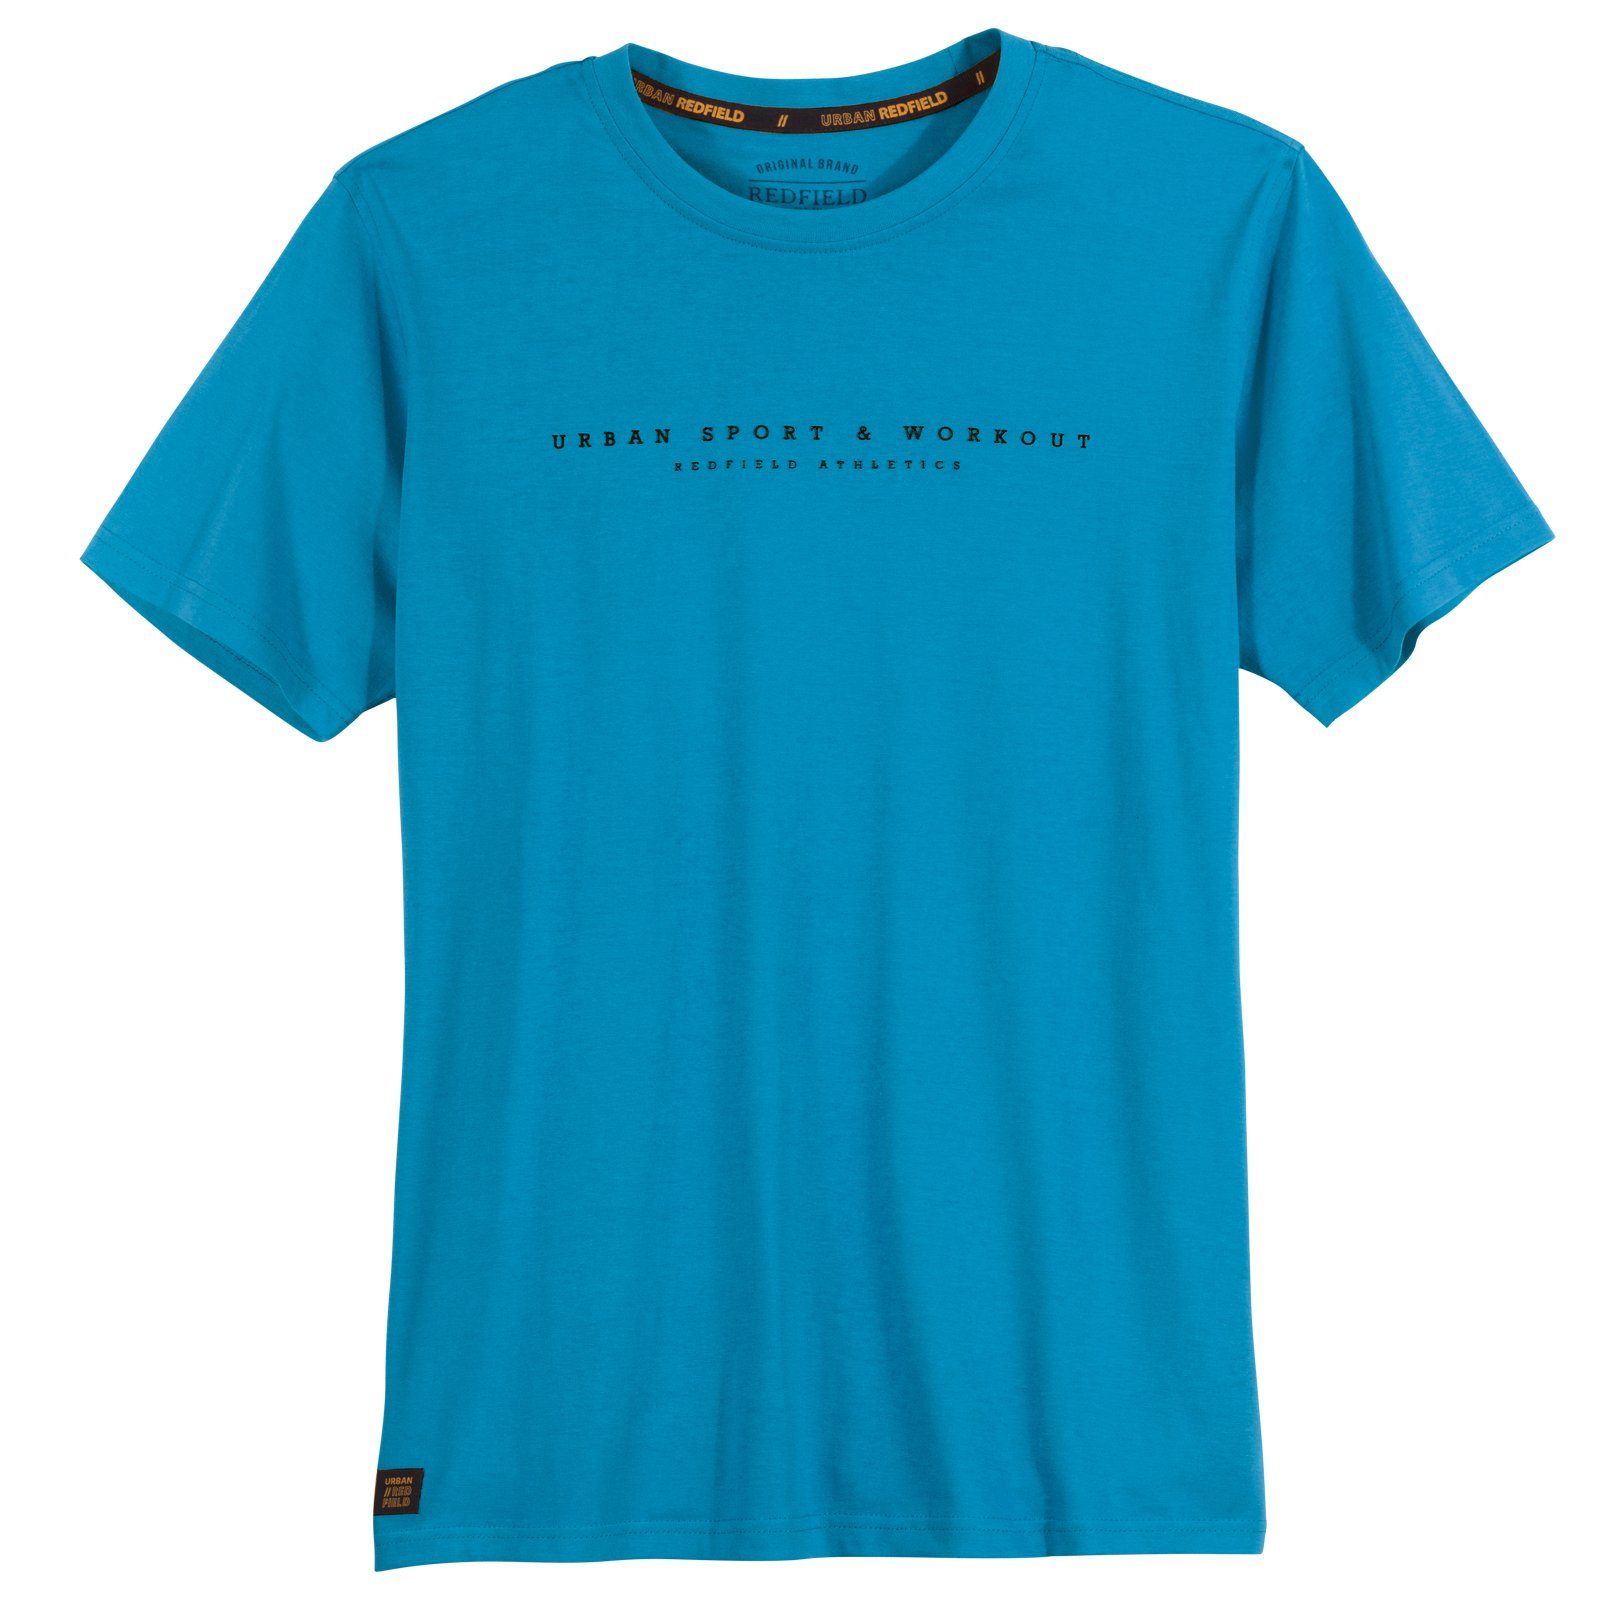 redfield Print-Shirt Große Größen T-Shirt türkis sportiver Schriftprint Redfield